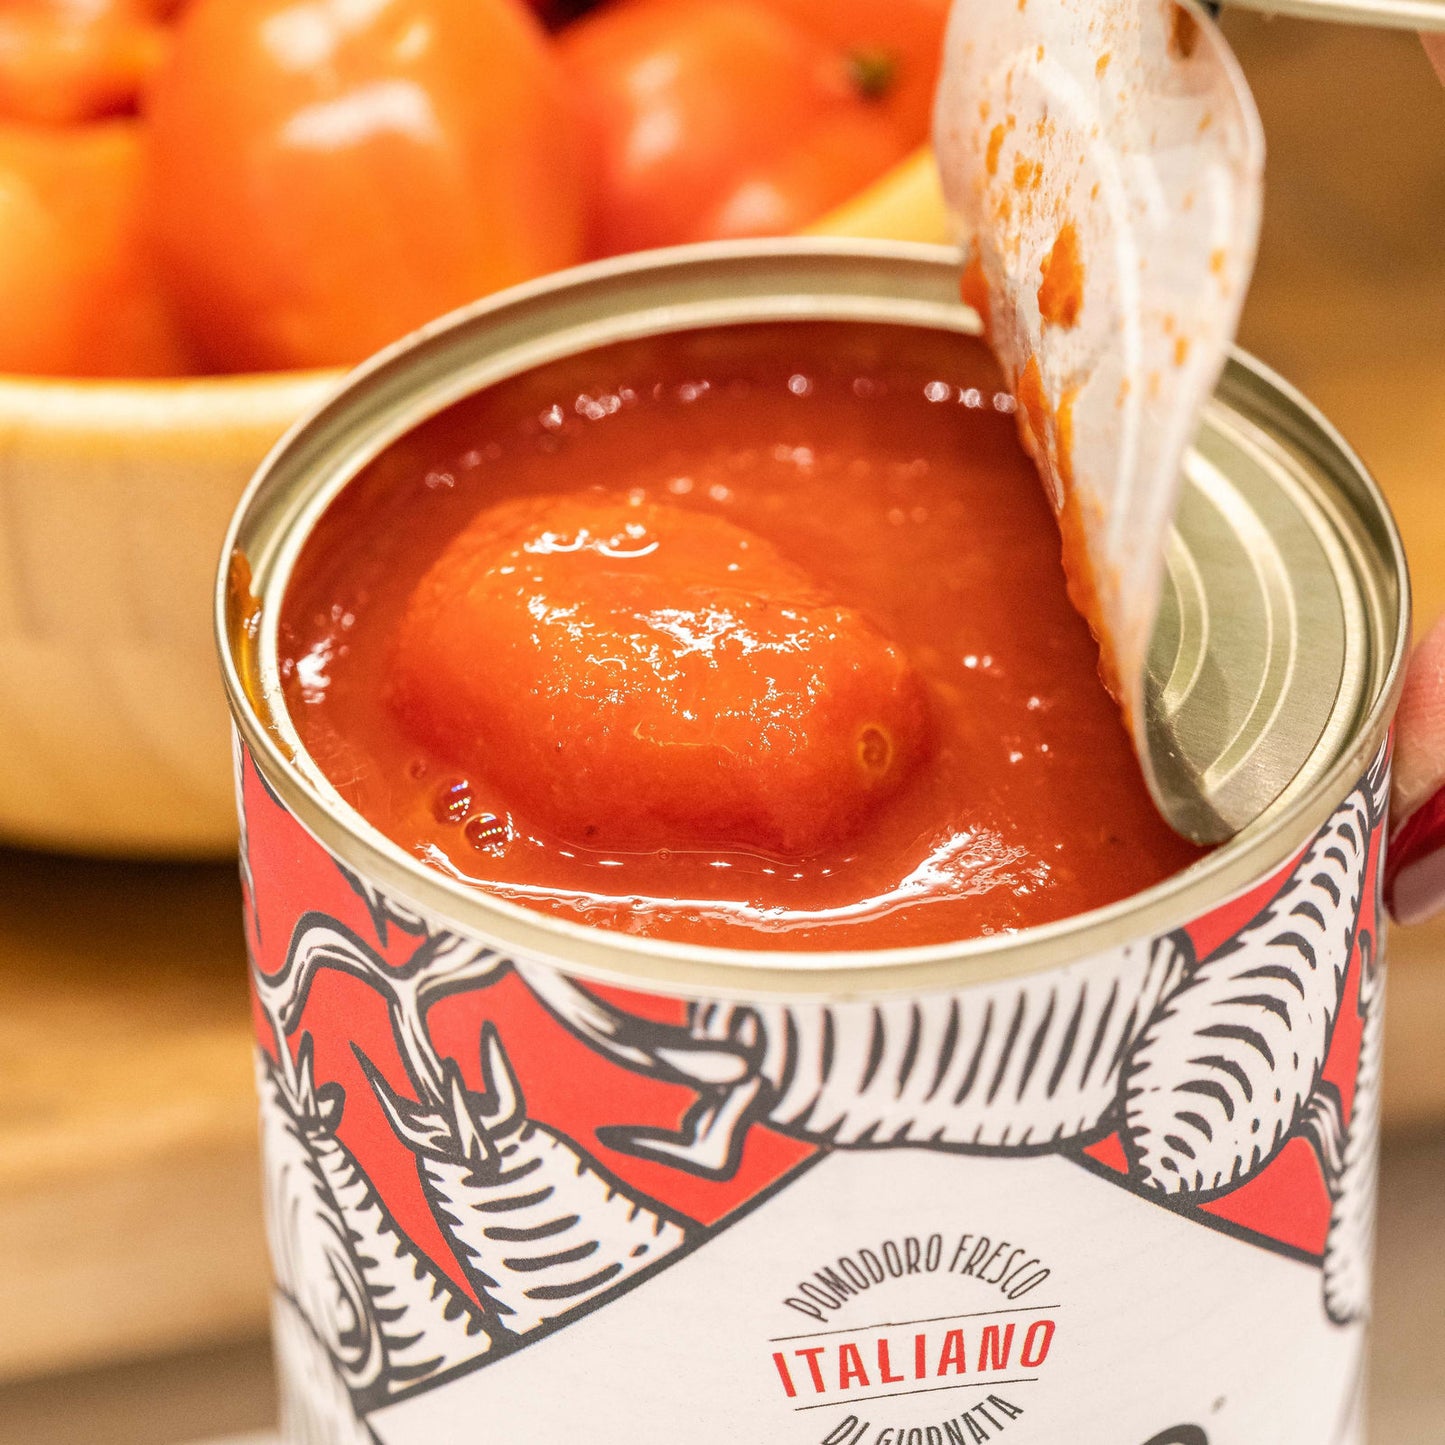 Piennolo del Vesuvio DOP tomato in juice